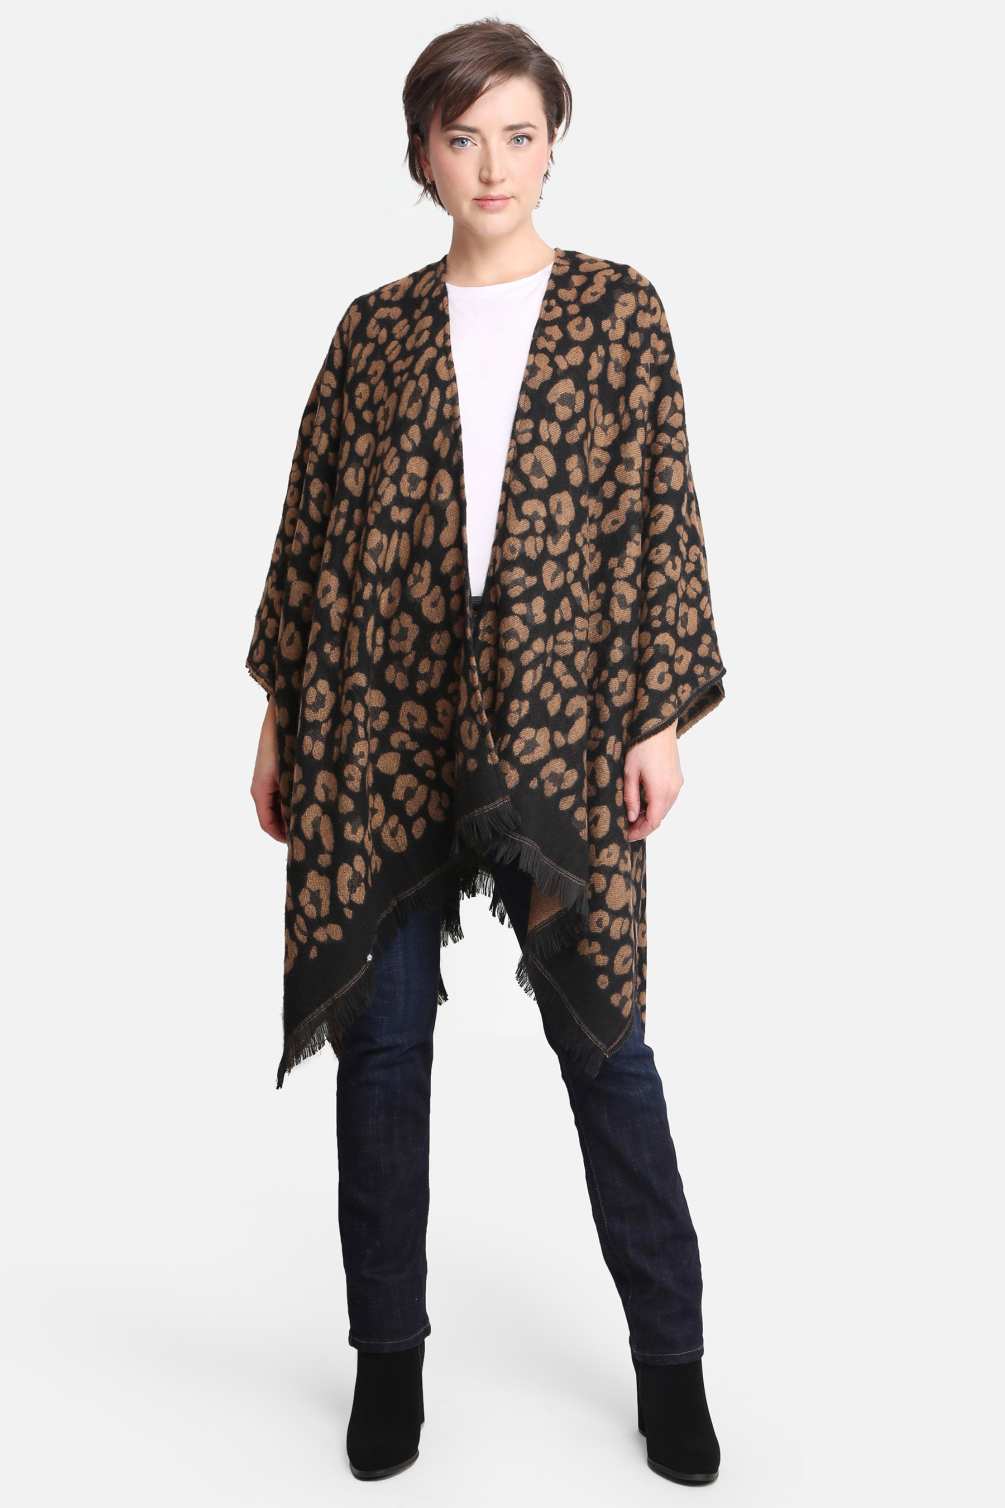 Free Size LUXe Leopard Kimono 